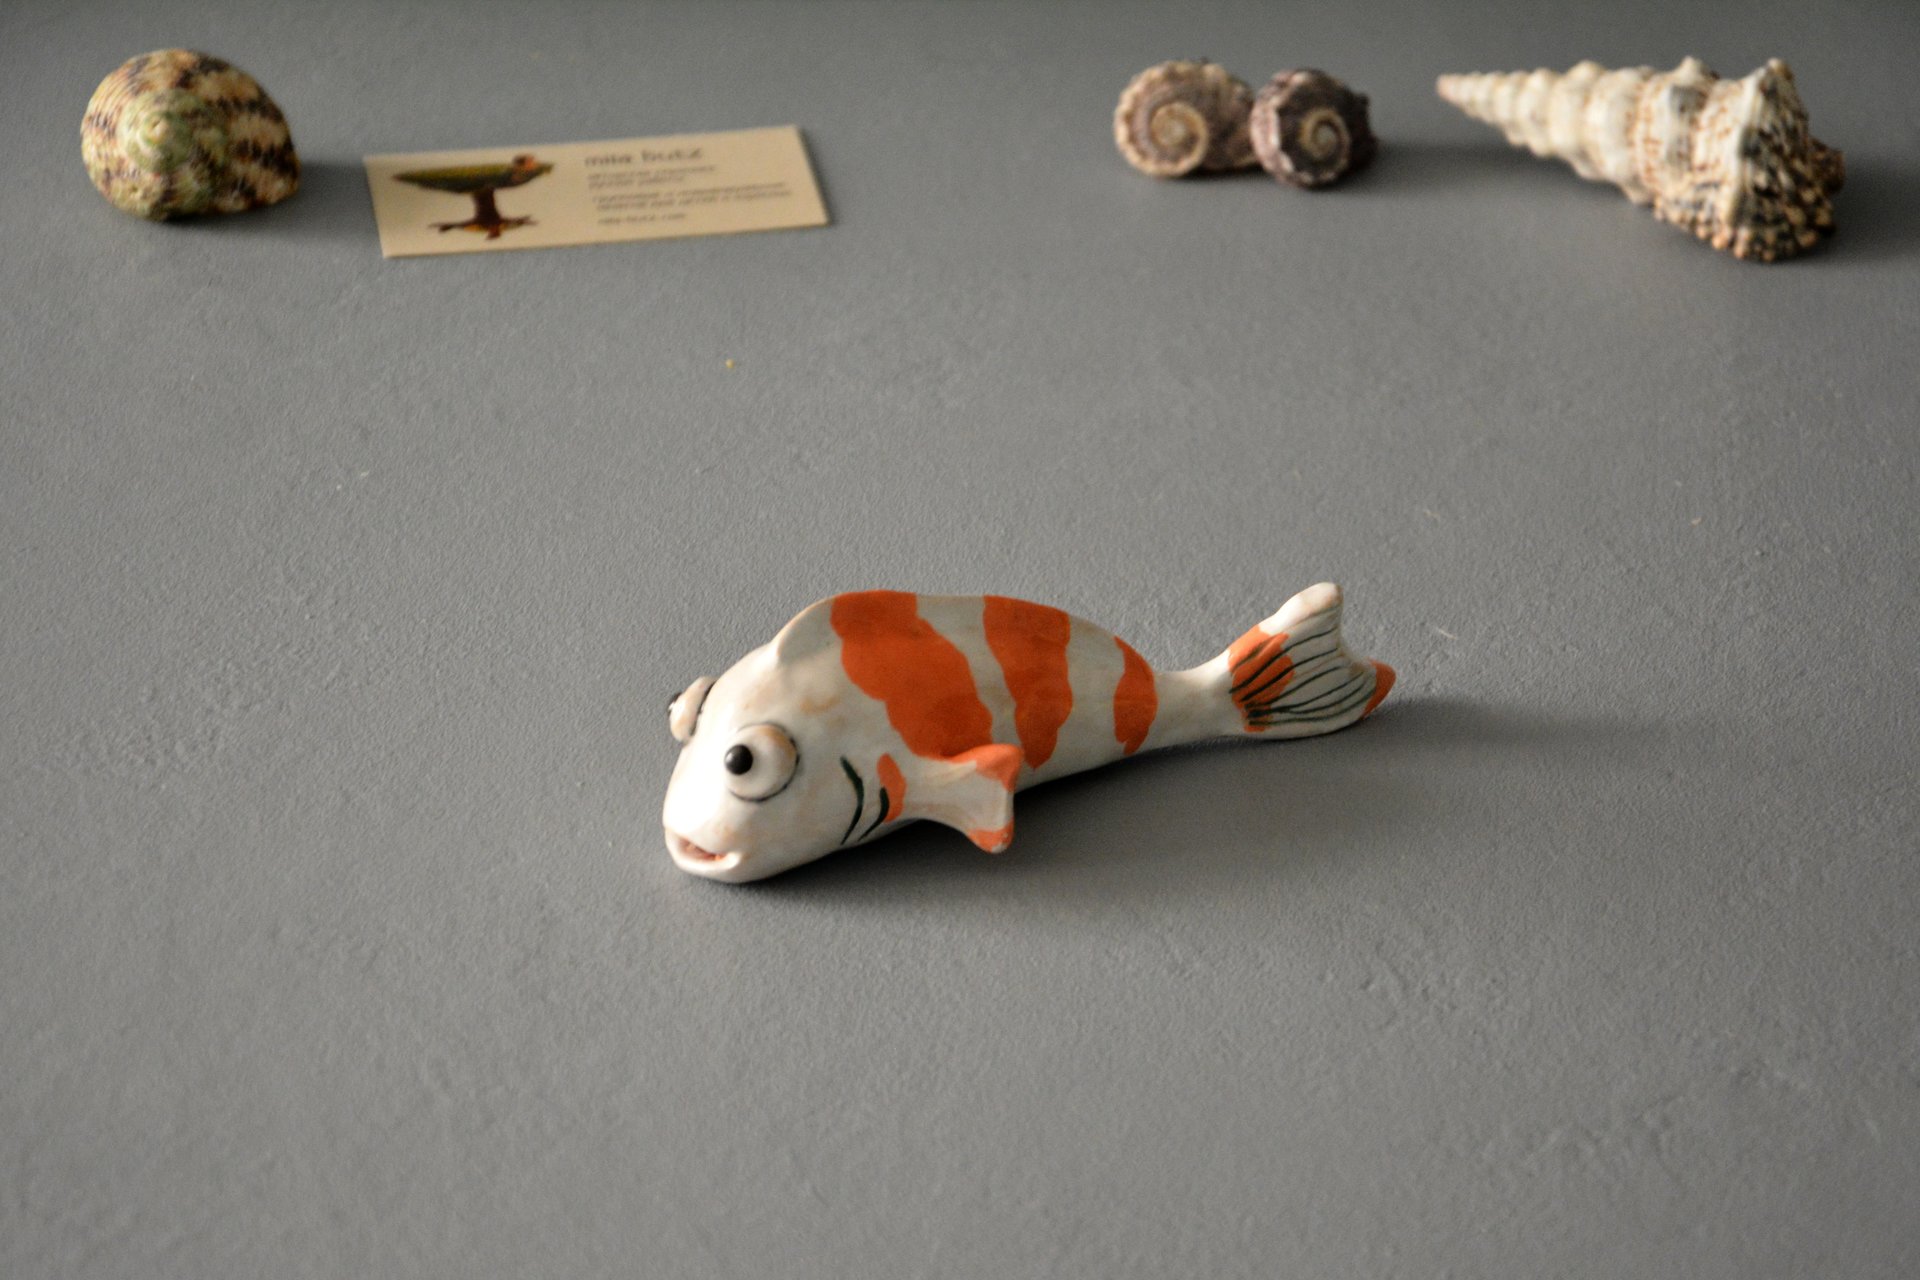 Керамическая Фигурка рыбки Карп Кои, длина - 14 см, ширина - 6 см, высота - 5 см, фото 2 из 6.